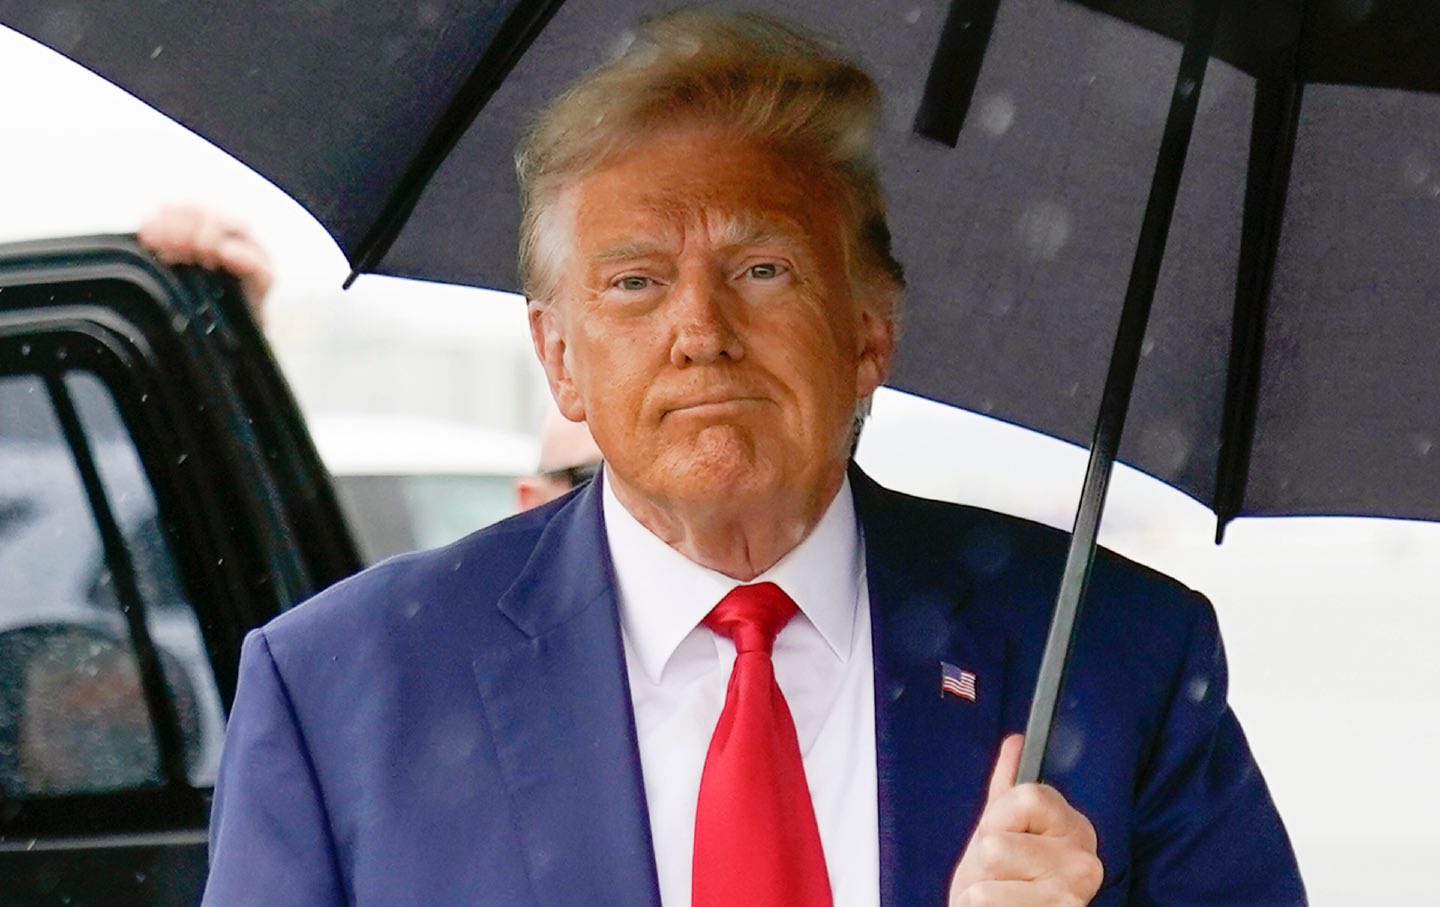 Trump hält einen Regenschirm in der Hand und geht zum Flugzeug